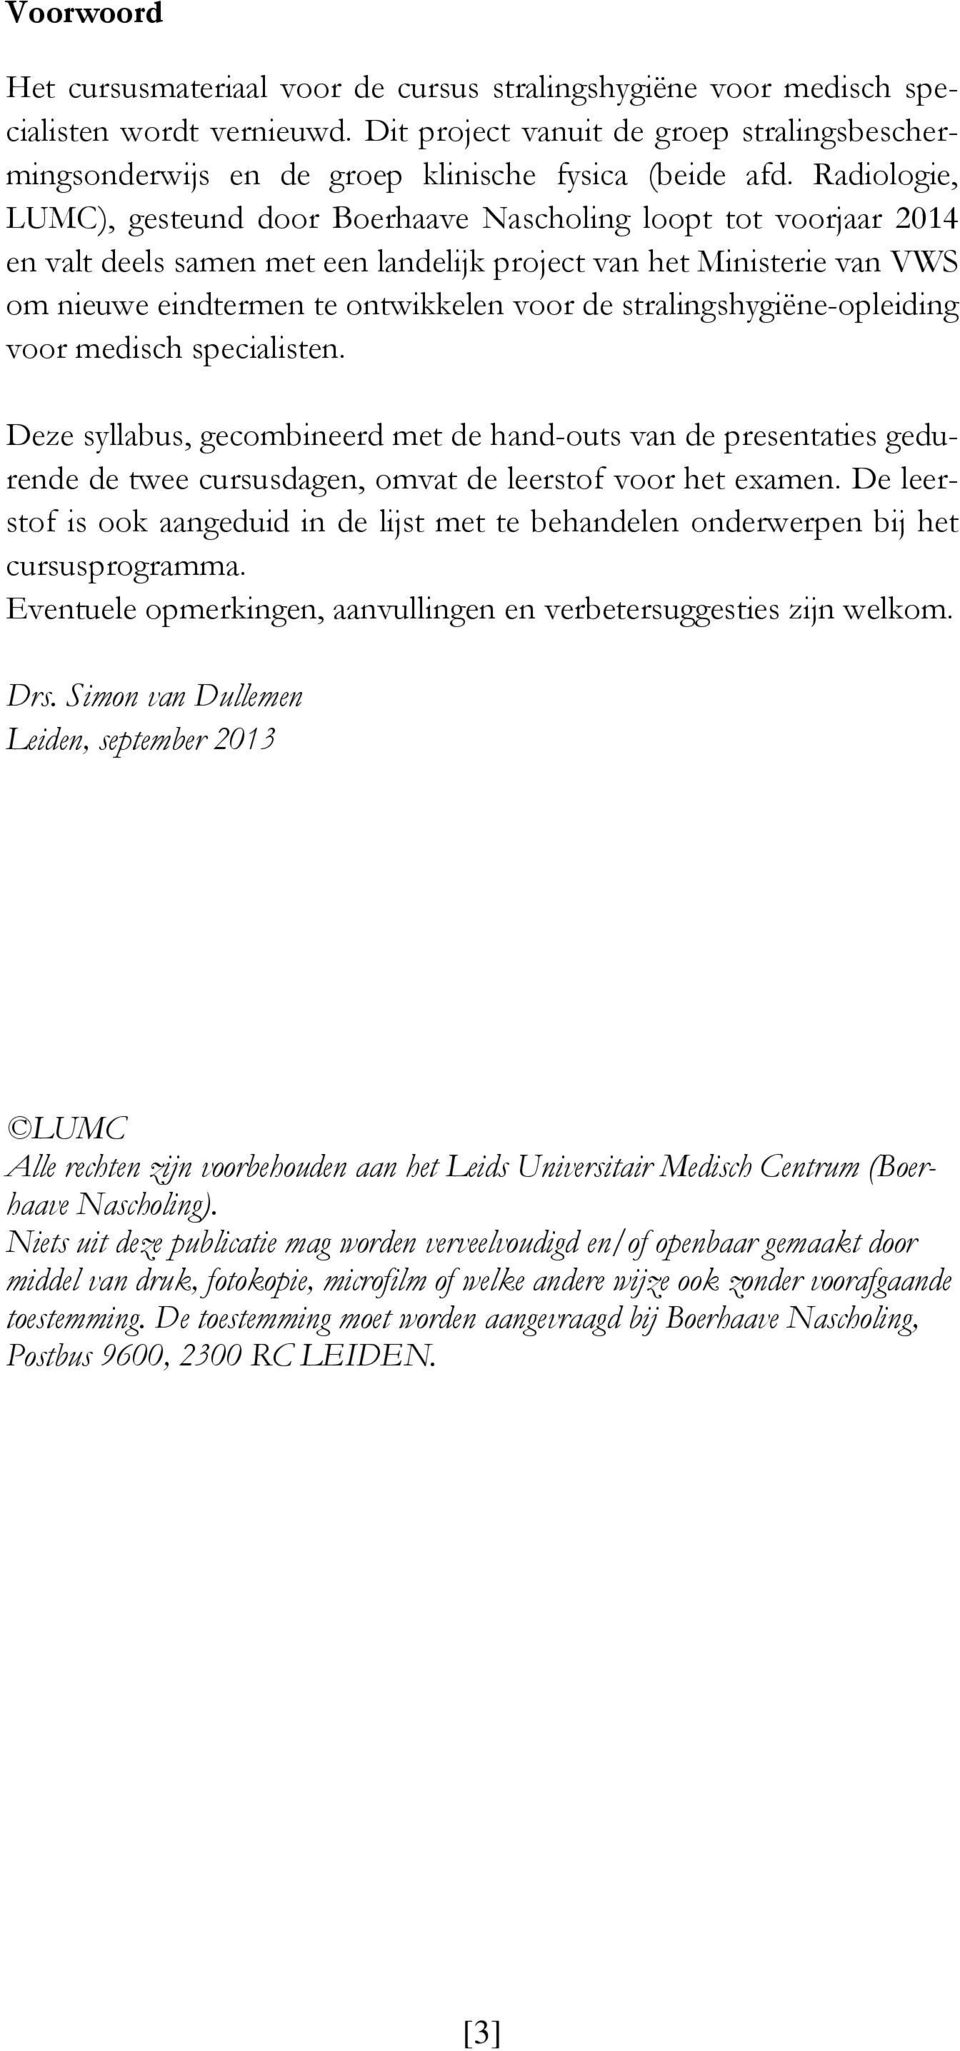 Radiologie, LUMC), gesteund door Boerhaave Nascholing loopt tot voorjaar 2014 en valt deels samen met een landelijk project van het Ministerie van VWS om nieuwe eindtermen te ontwikkelen voor de